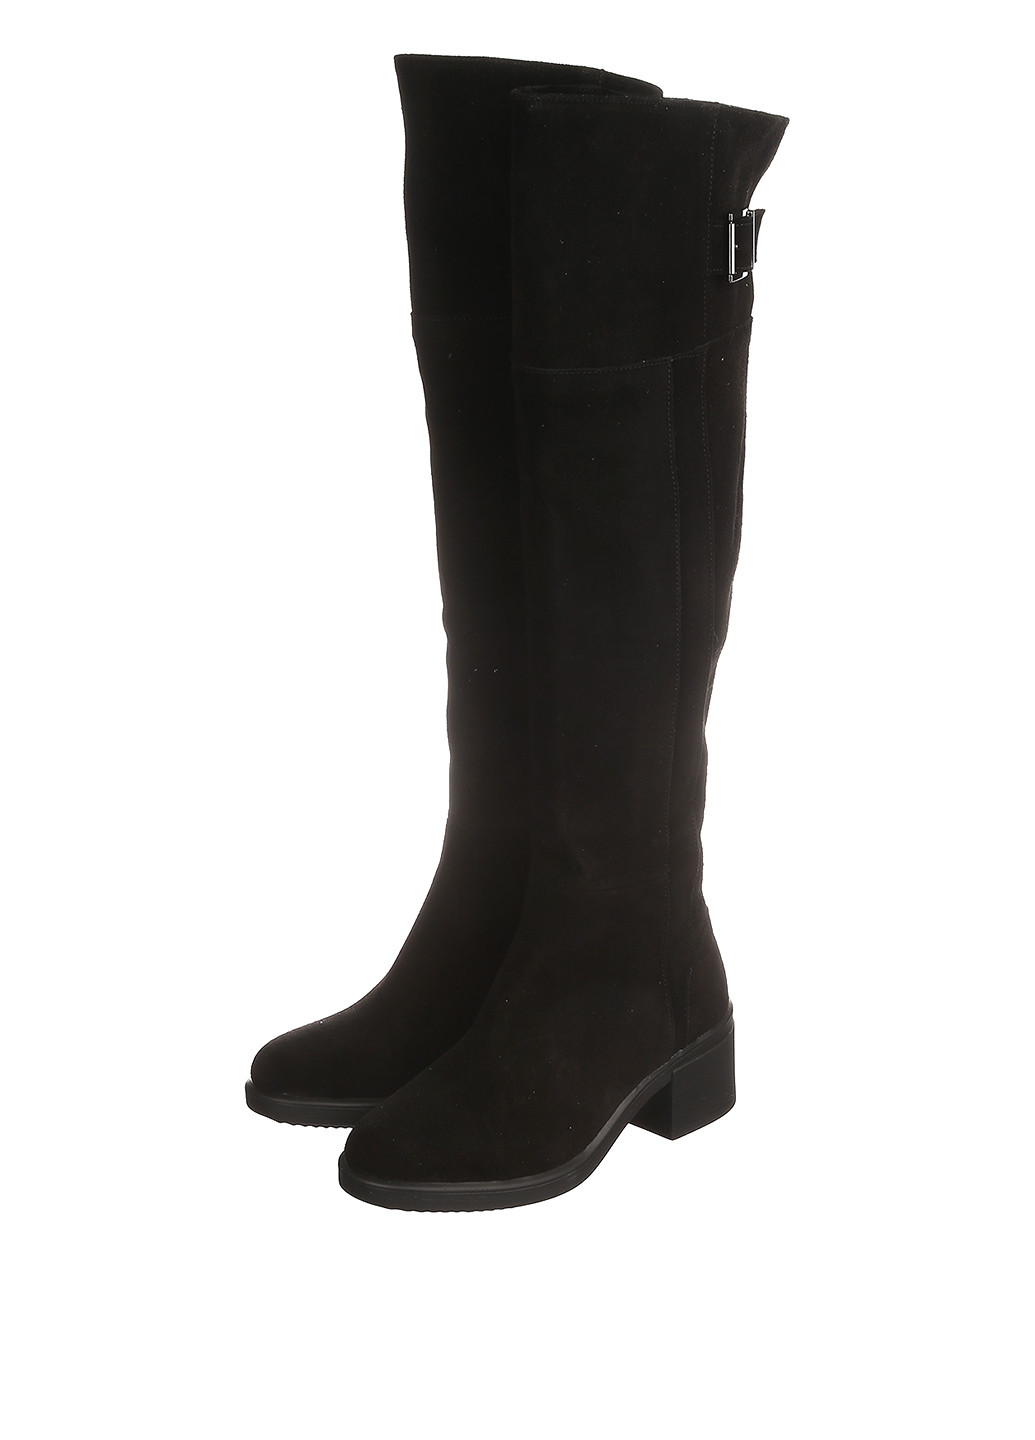 Черные зимние ботфорты Franzini на среднем каблуке с пряжкой